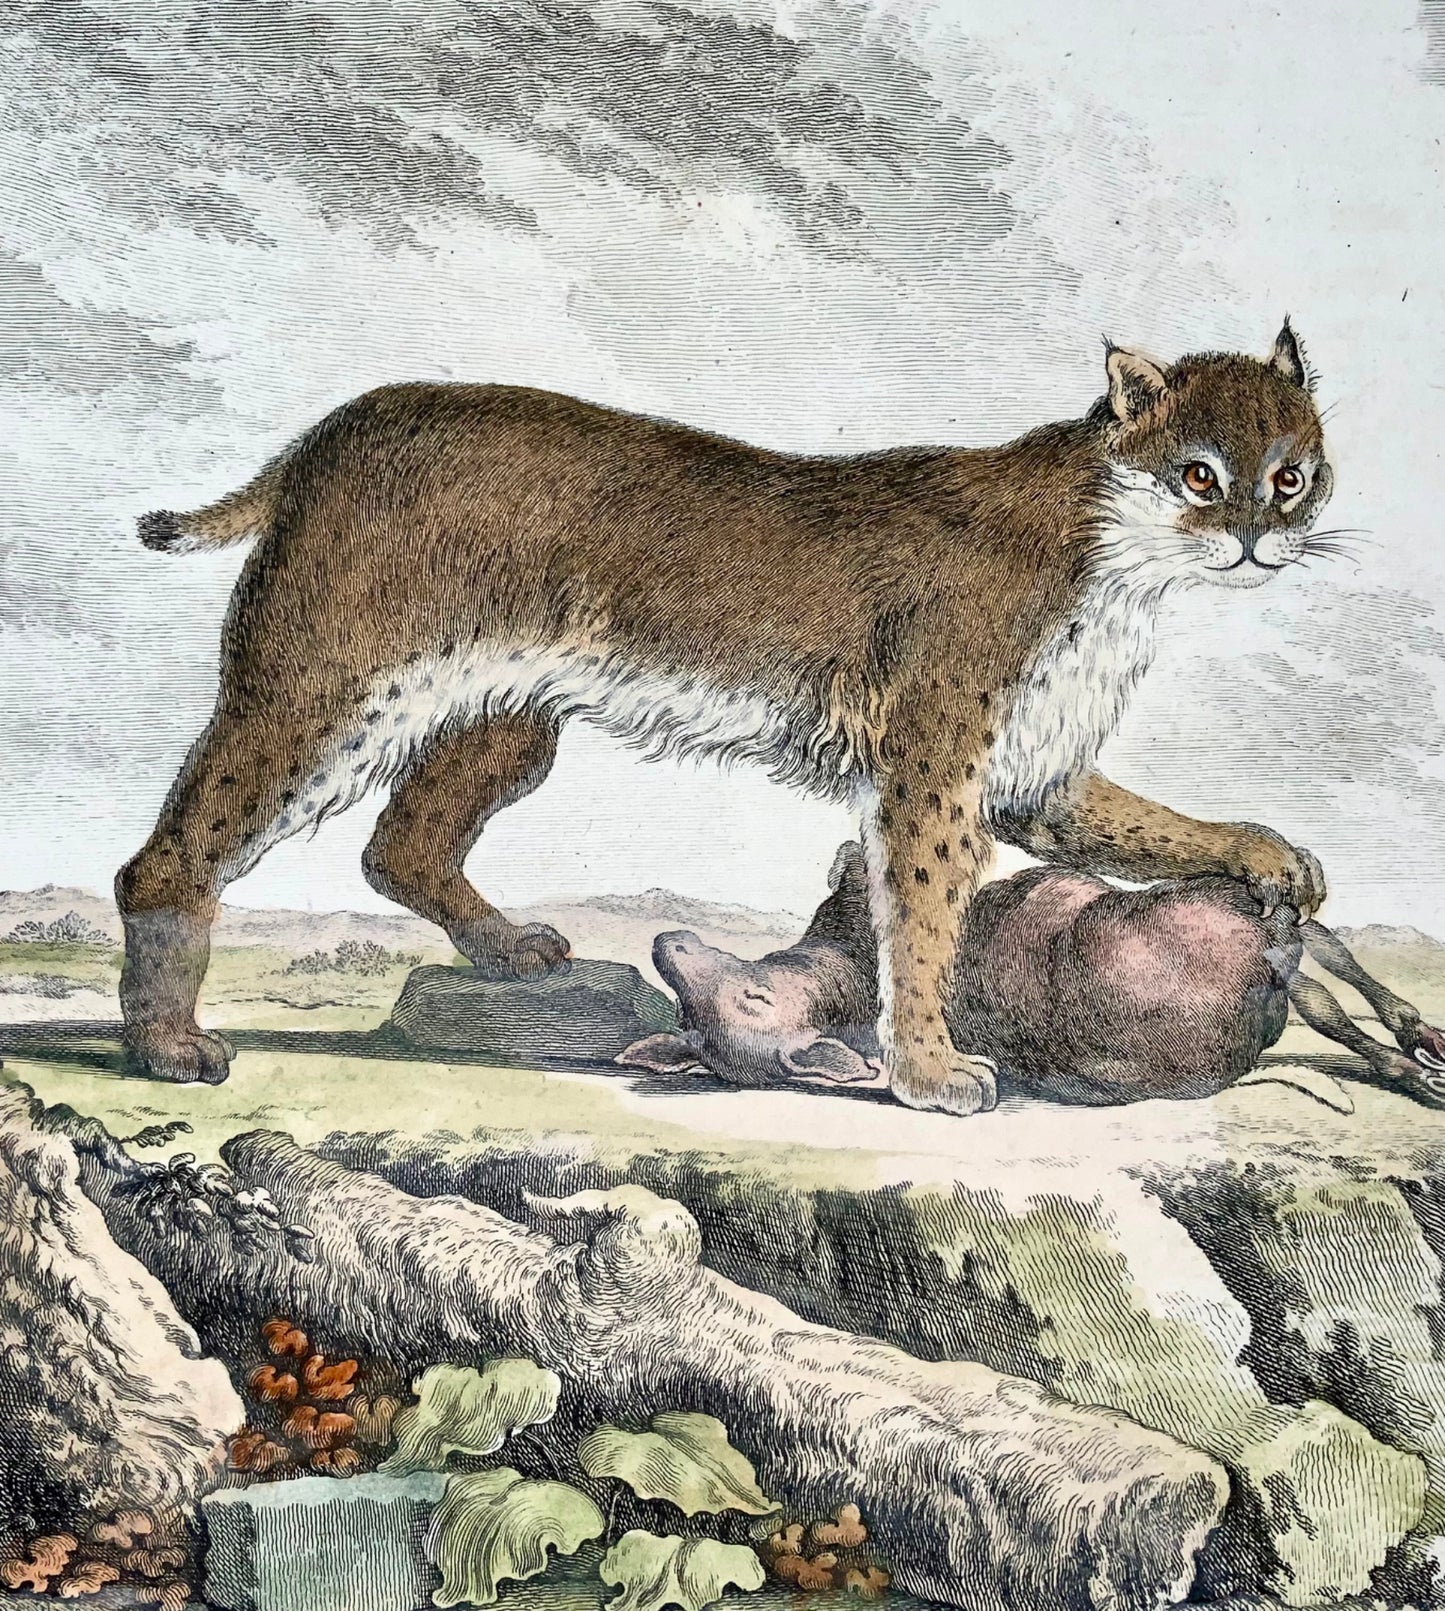 1779 Lynx du Mississippi ; J. de Sève, mammifère, gravure in-4 coloriée à la main